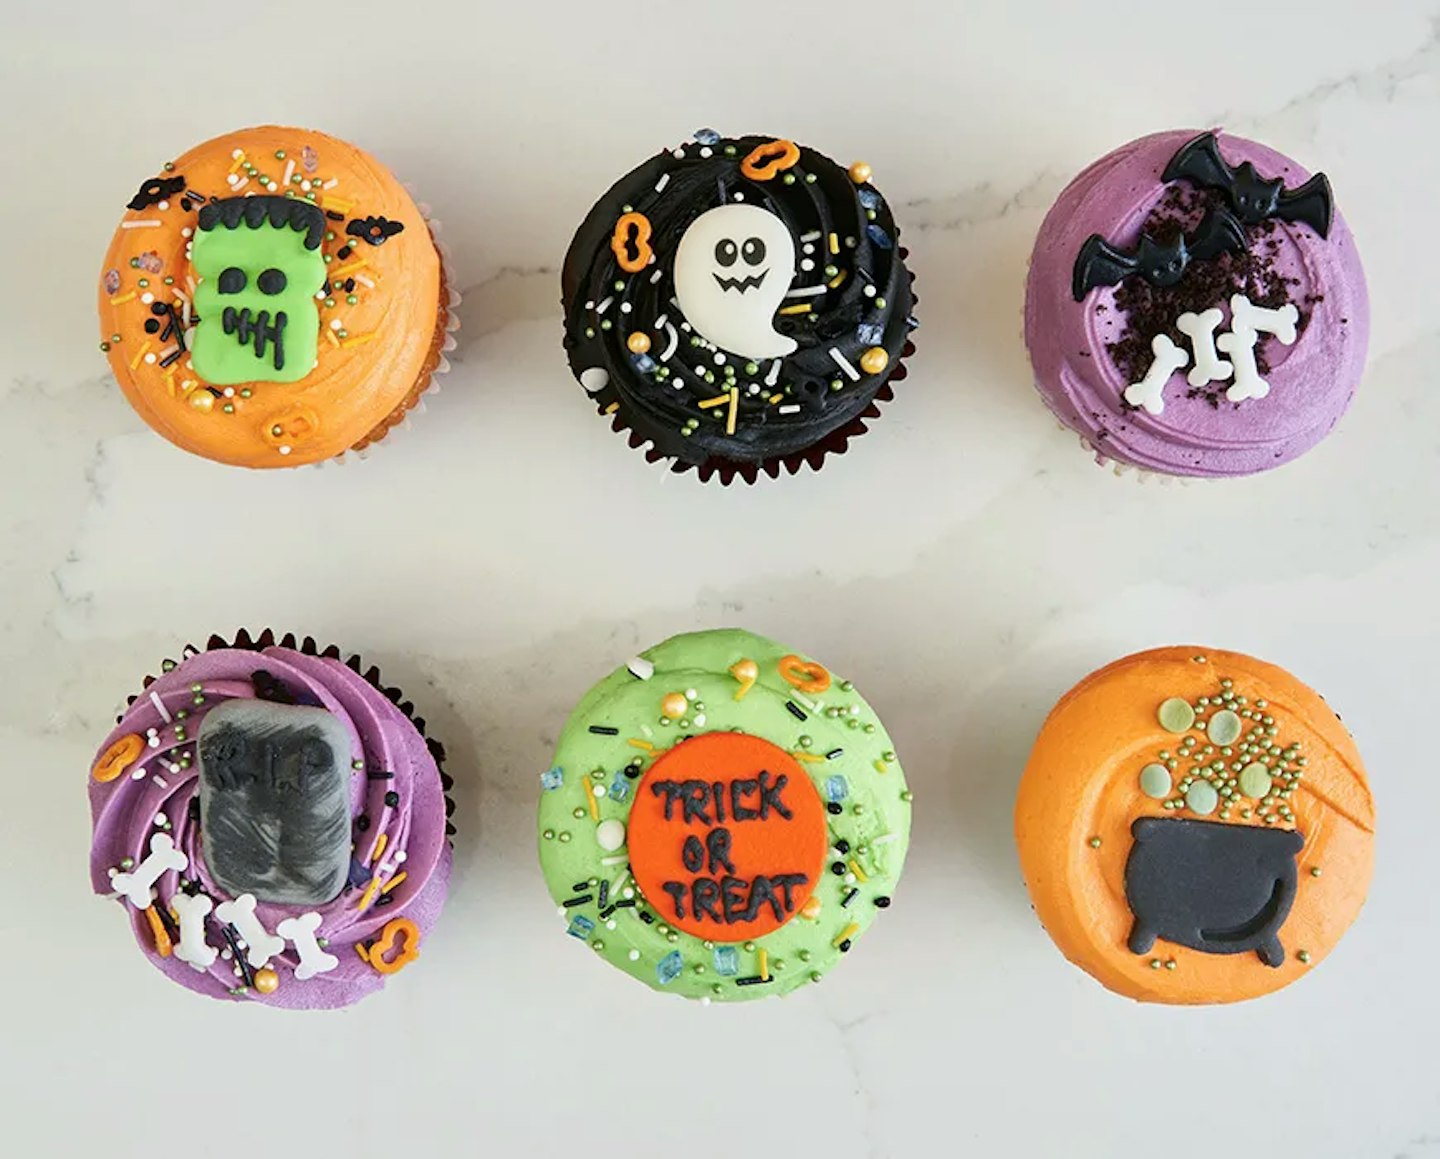 Lola's Cupcakes Halloween gift ideas